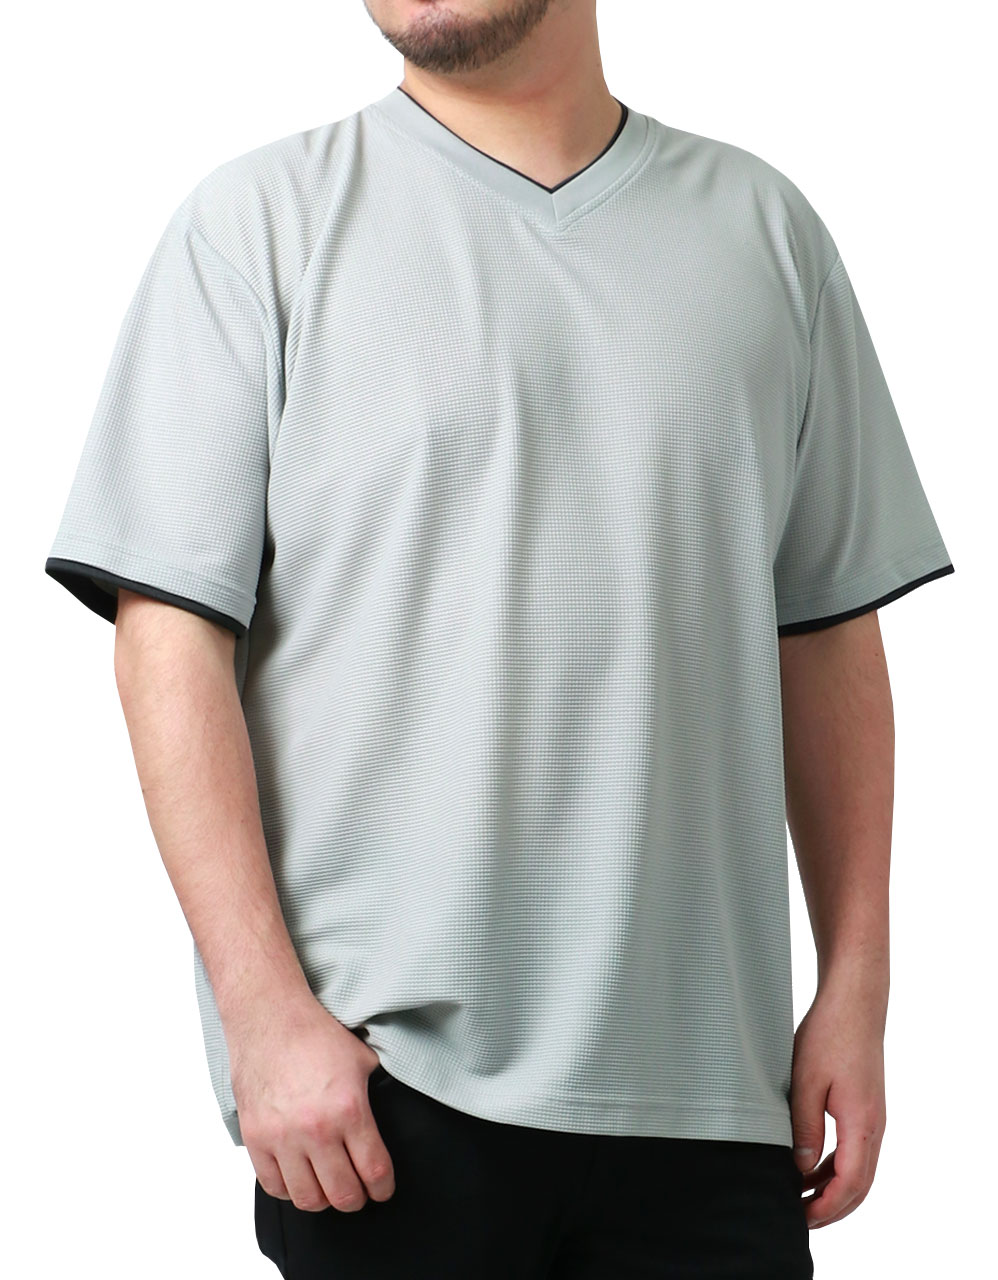 大きいサイズメンズ Tシャツ DISCUS ディスカス 半袖 Vネック